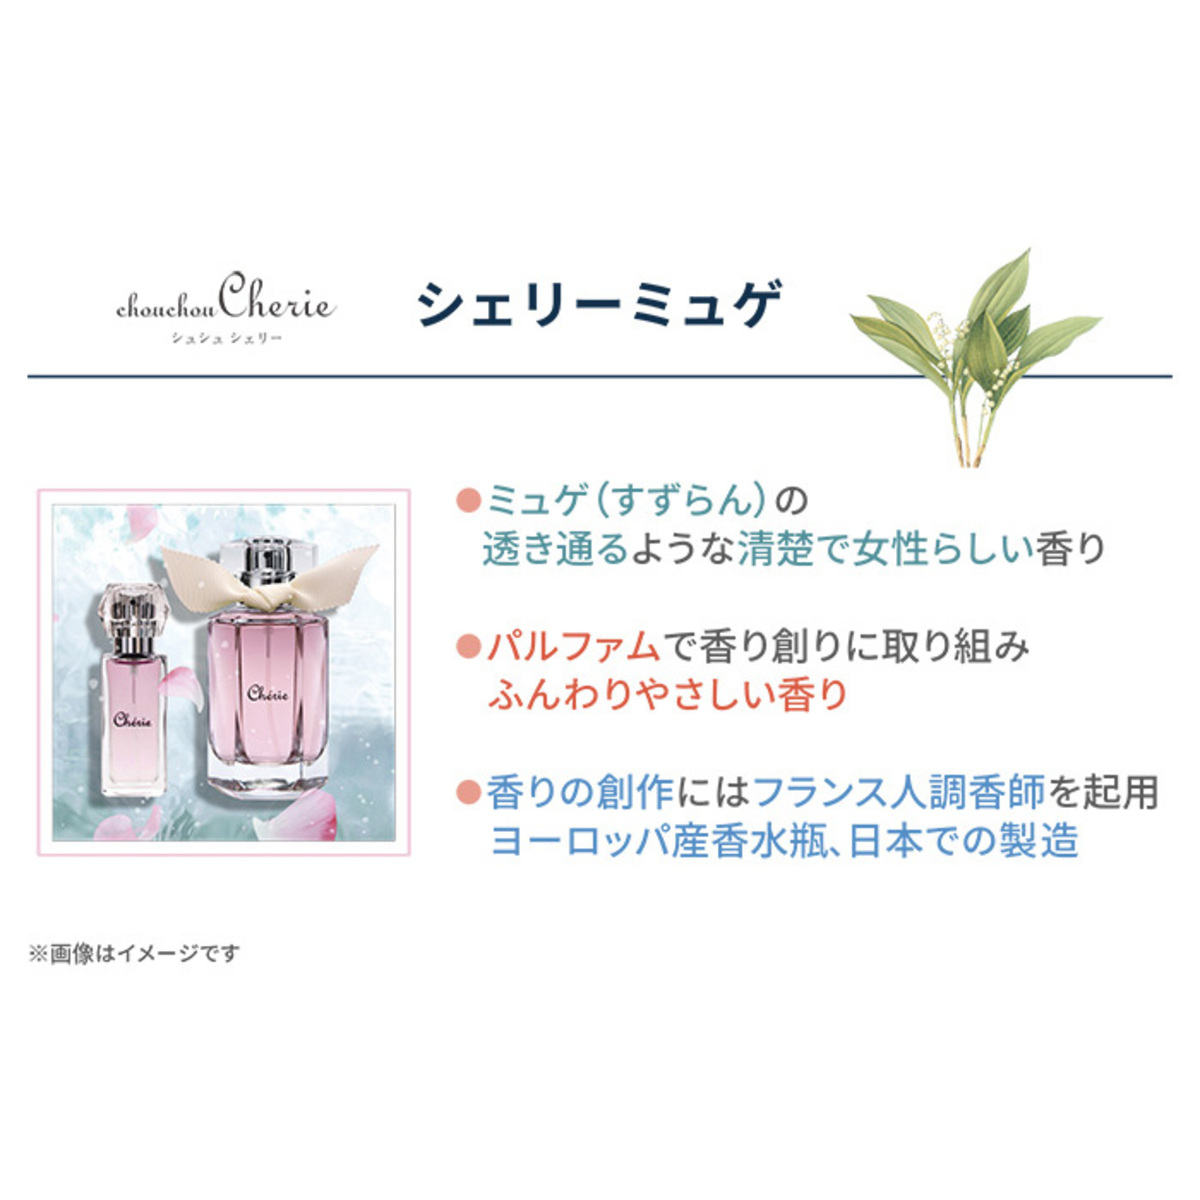 シュシュシェリー 日本製香水 ミュゲ50ML 特別セット - QVC.jp